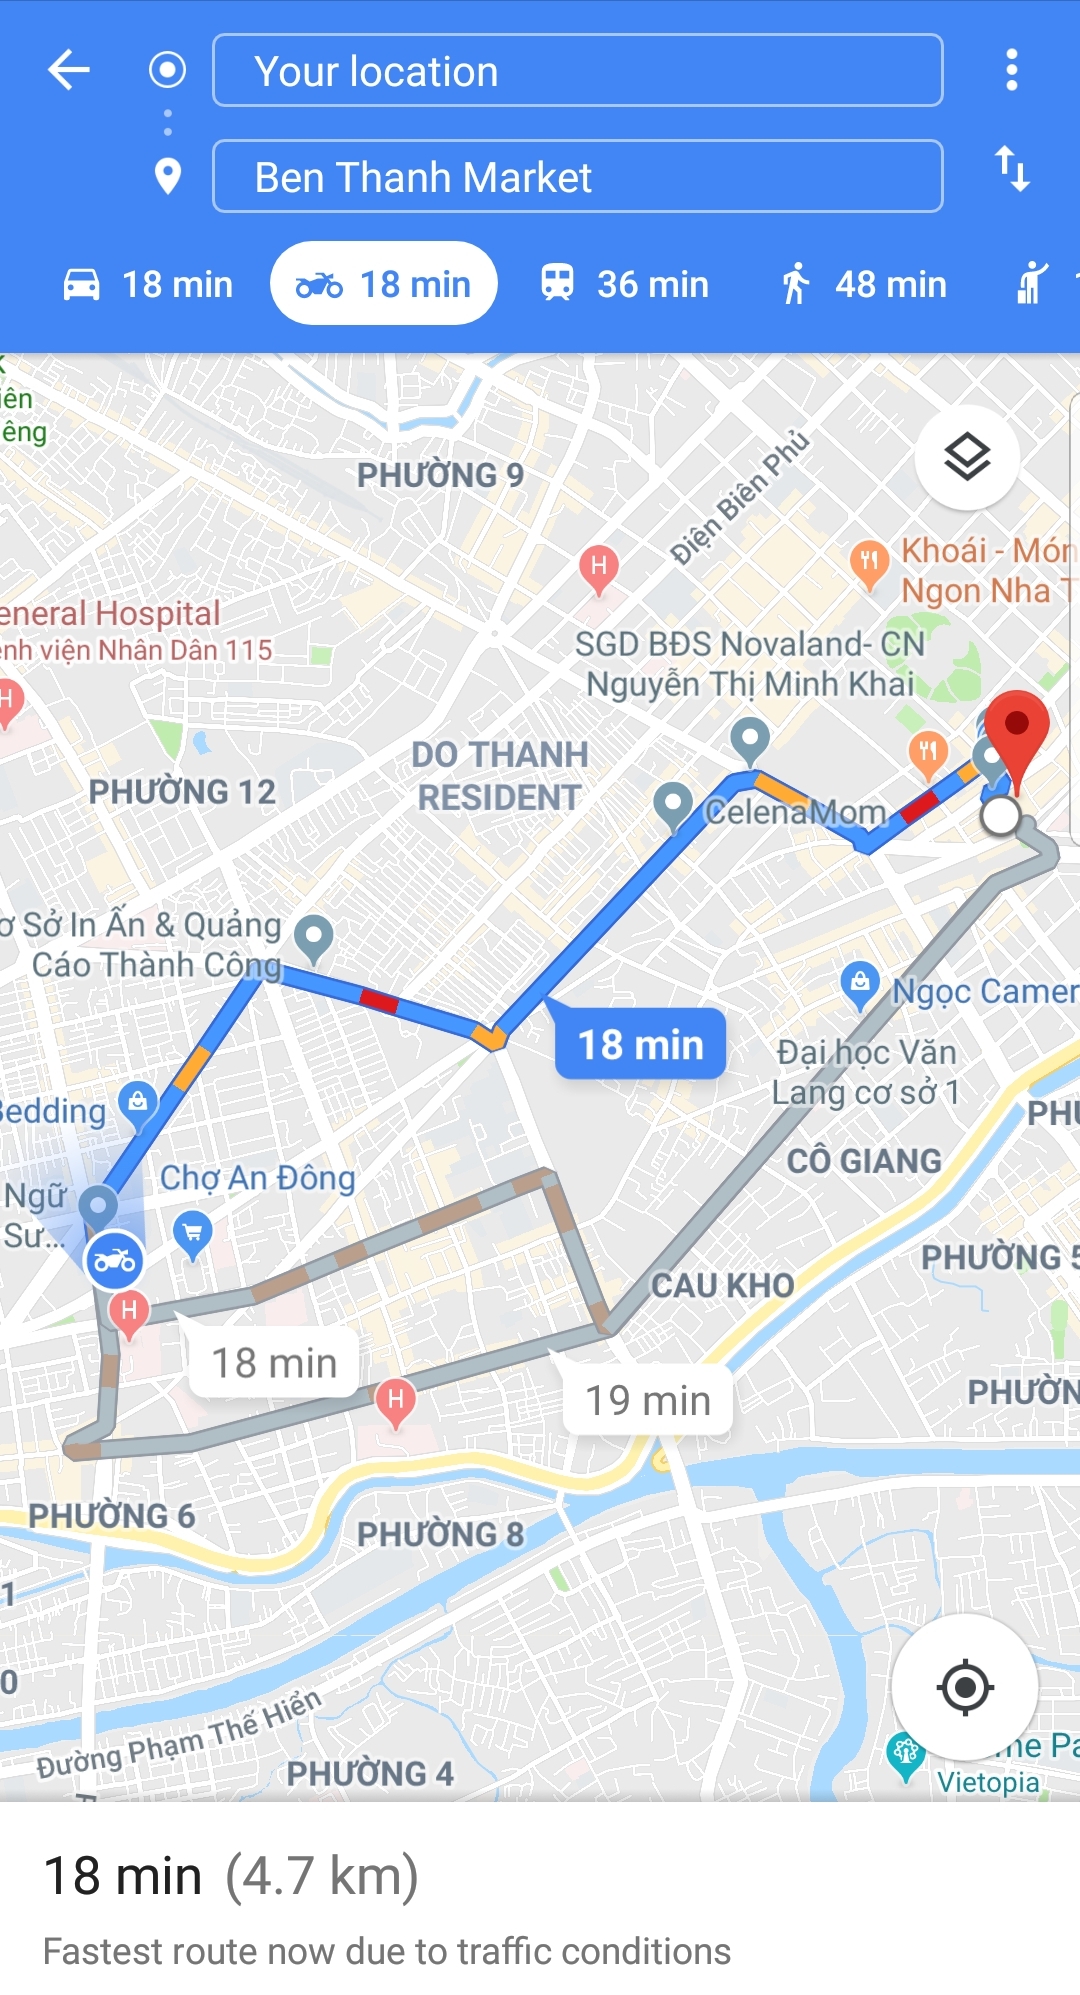 Google Maps xe 2 bánh: Google Maps đã cập nhật tính năng định vị xe 2 bánh, giúp người dùng dễ dàng tìm kiếm đường đi và lựa chọn lộ trình phù hợp. Hãy theo dõi hình ảnh để tìm hiểu thêm về tính năng mới này và trải nghiệm dịch vụ tiện ích từ Google Maps.